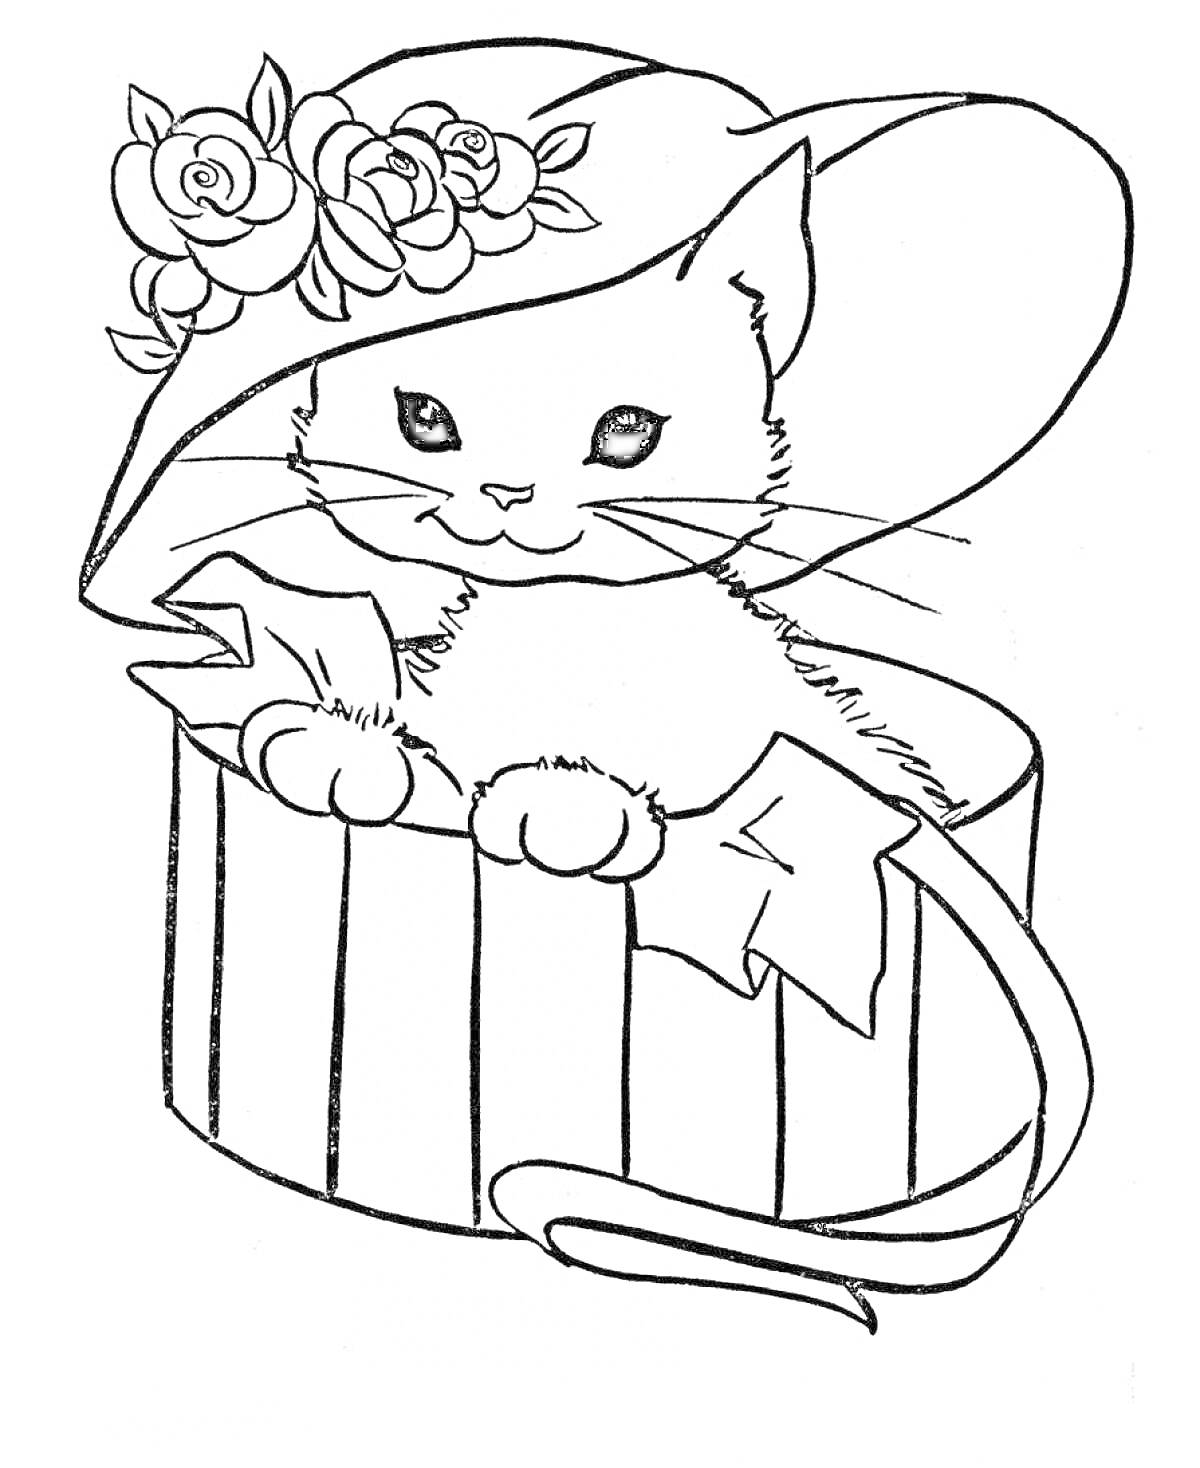 Раскраска Кошка в шляпе с цветами, сидящая в коробке